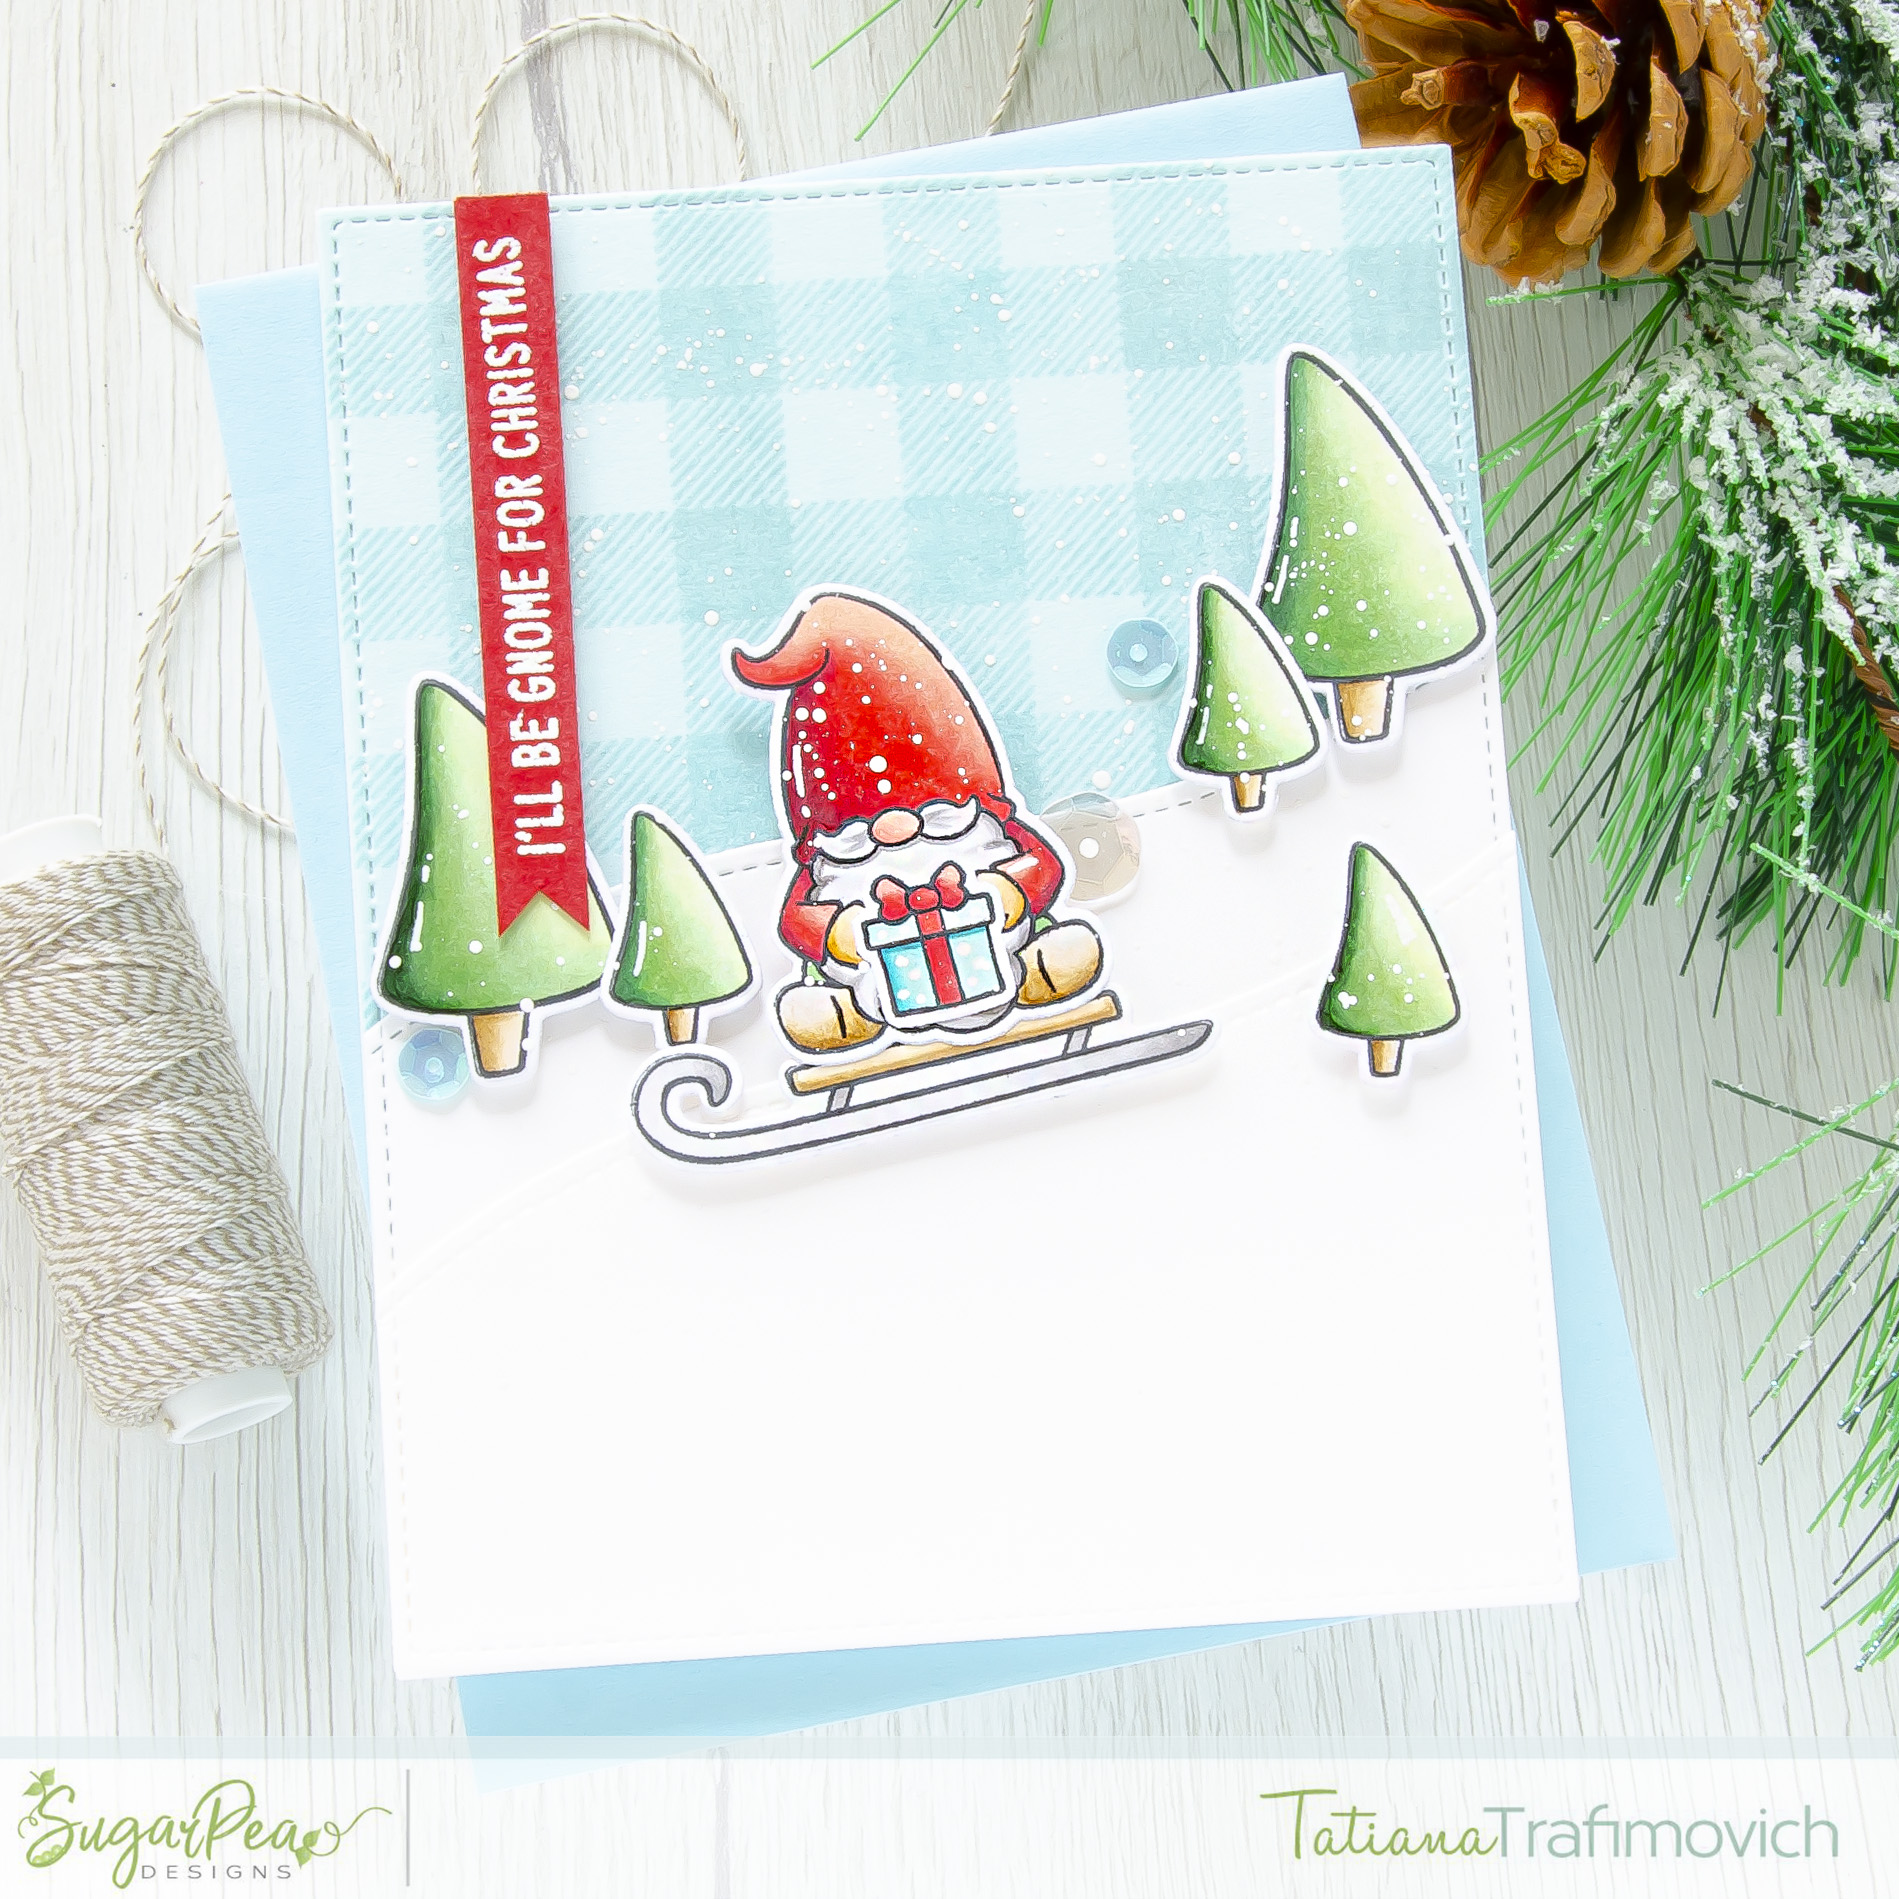 I'll Be Gnome For Christmas #handmade card by Tatiana Trafimovich #tatianacraftandart - Gnome For Christmas SugarCut by SugarPea Designs #sugarpeadesigns